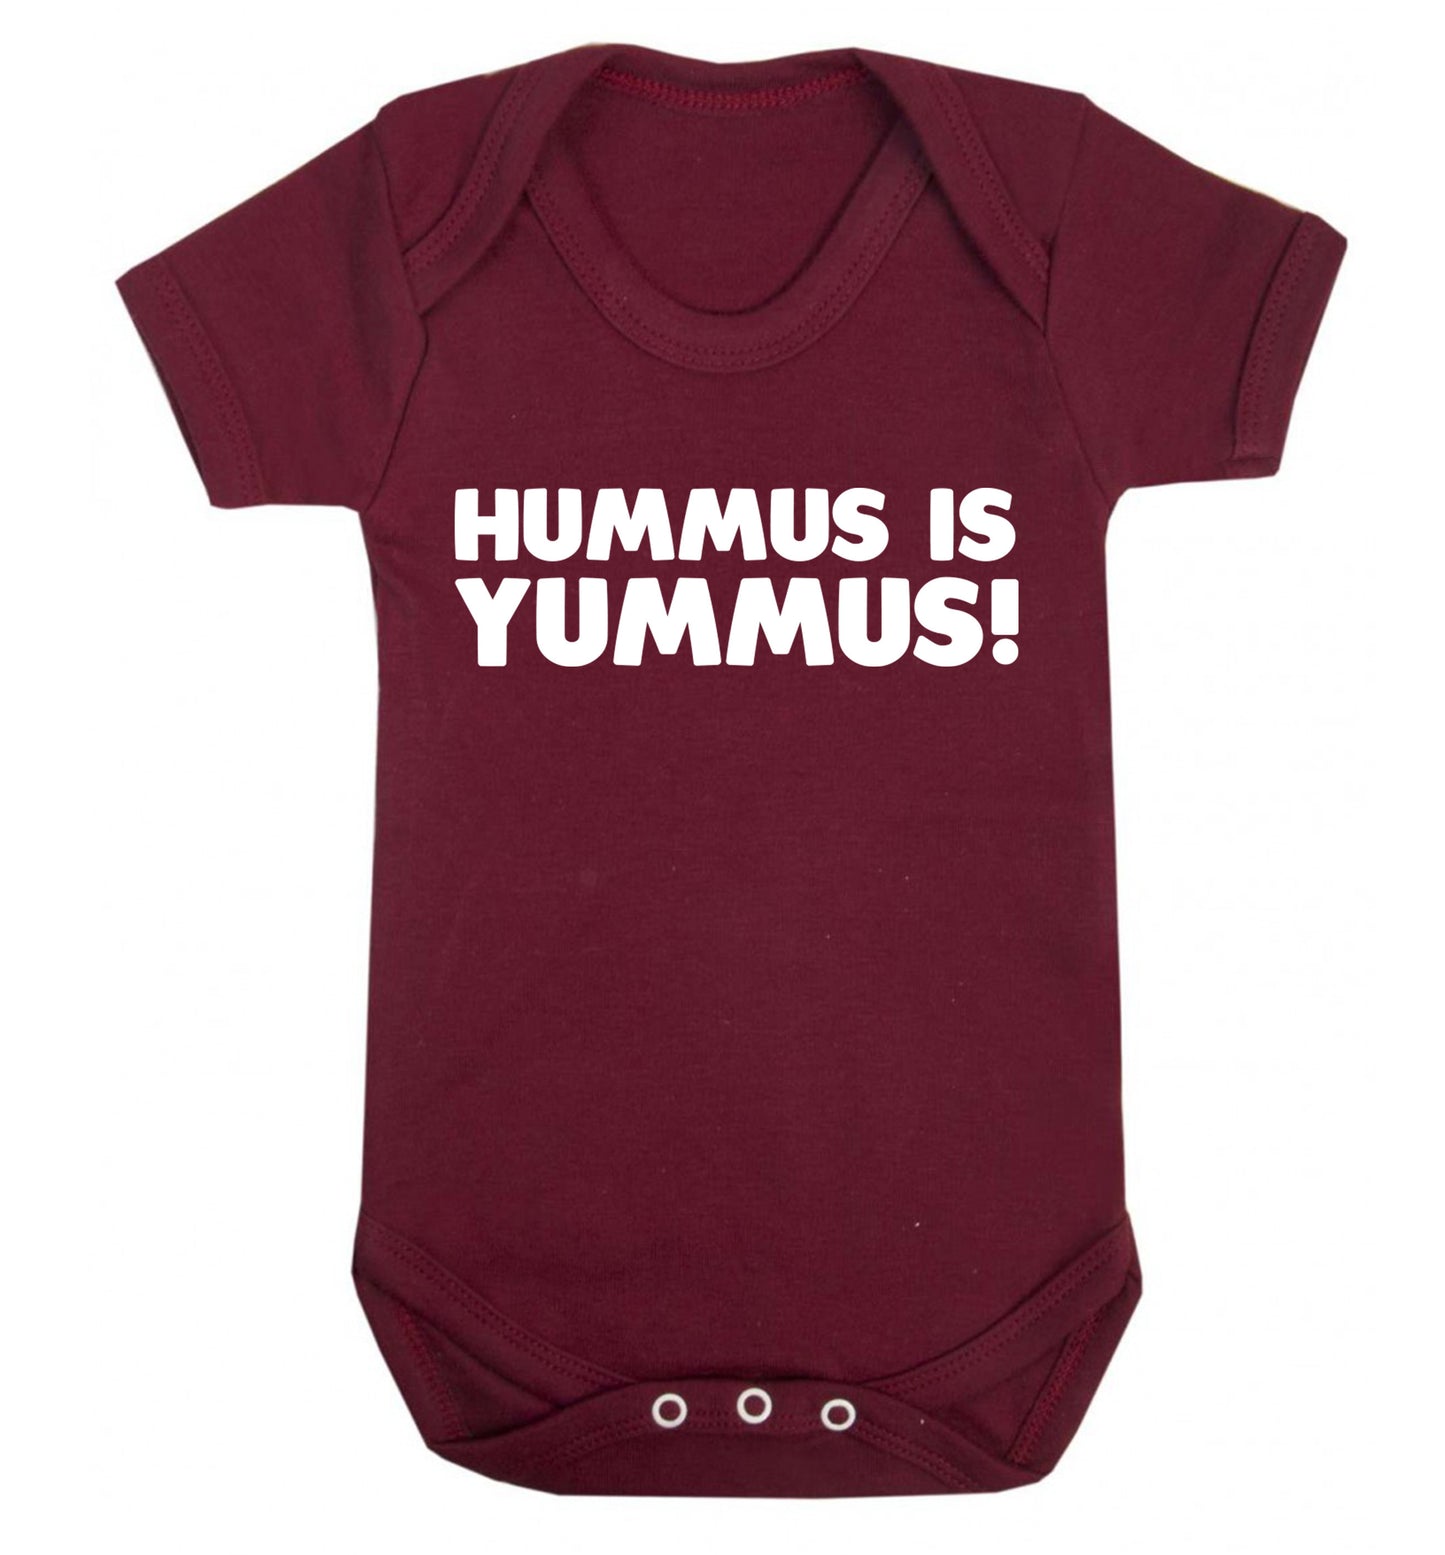 Hummus is Yummus  Baby Vest maroon 18-24 months